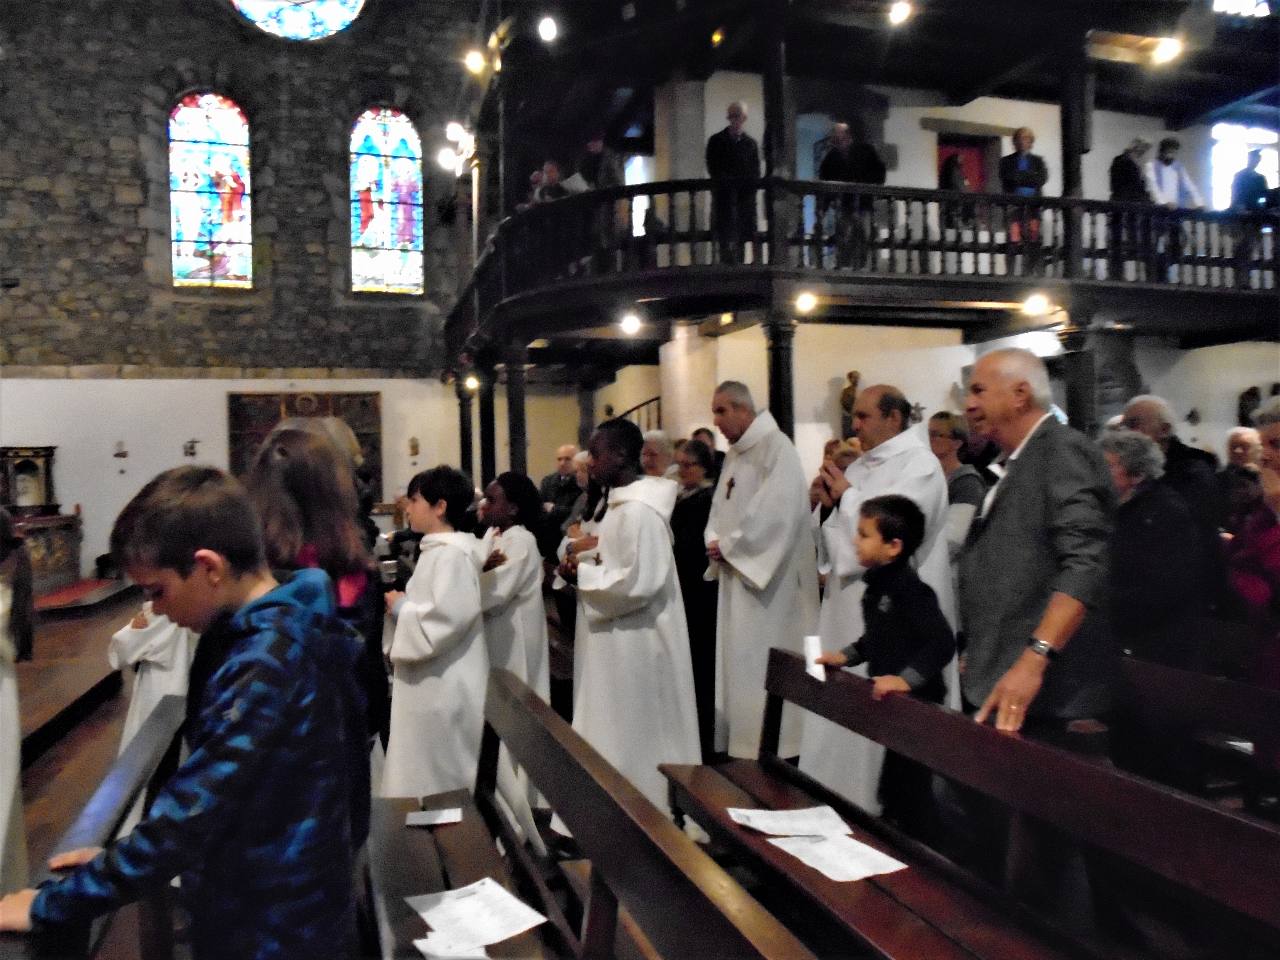 Les servants d'autel conduisent l'assemblée vers la communion